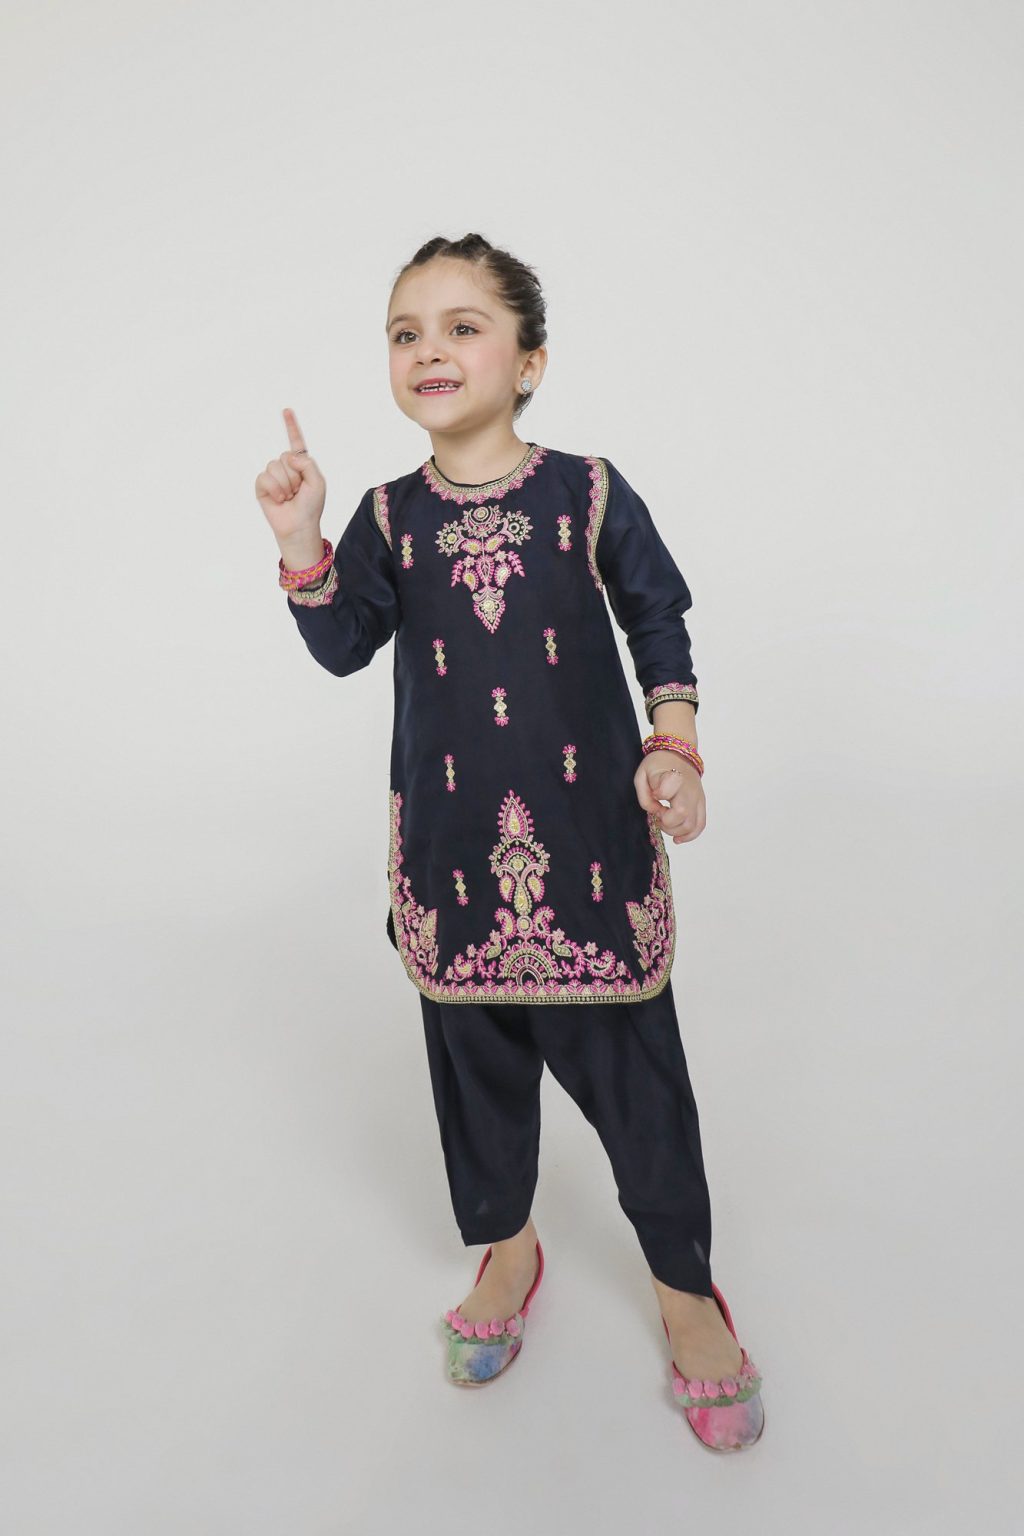 Ethnic Kids Clothing 14 1024x1536 